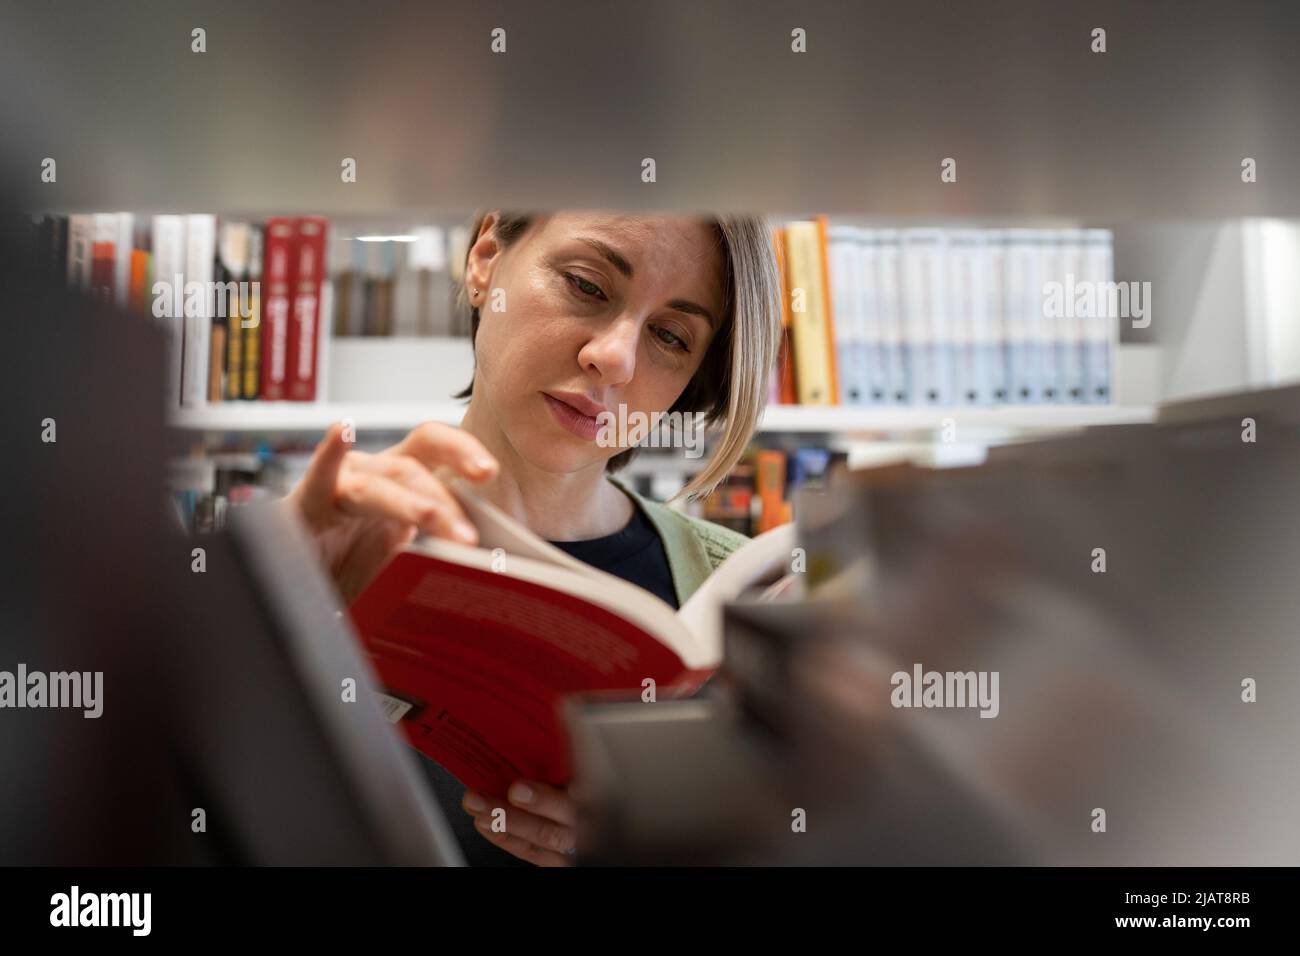 Donna scandinava di mezza età che sceglie il libro di testo, cercando la letteratura mentre si prepara per l'esame Foto Stock